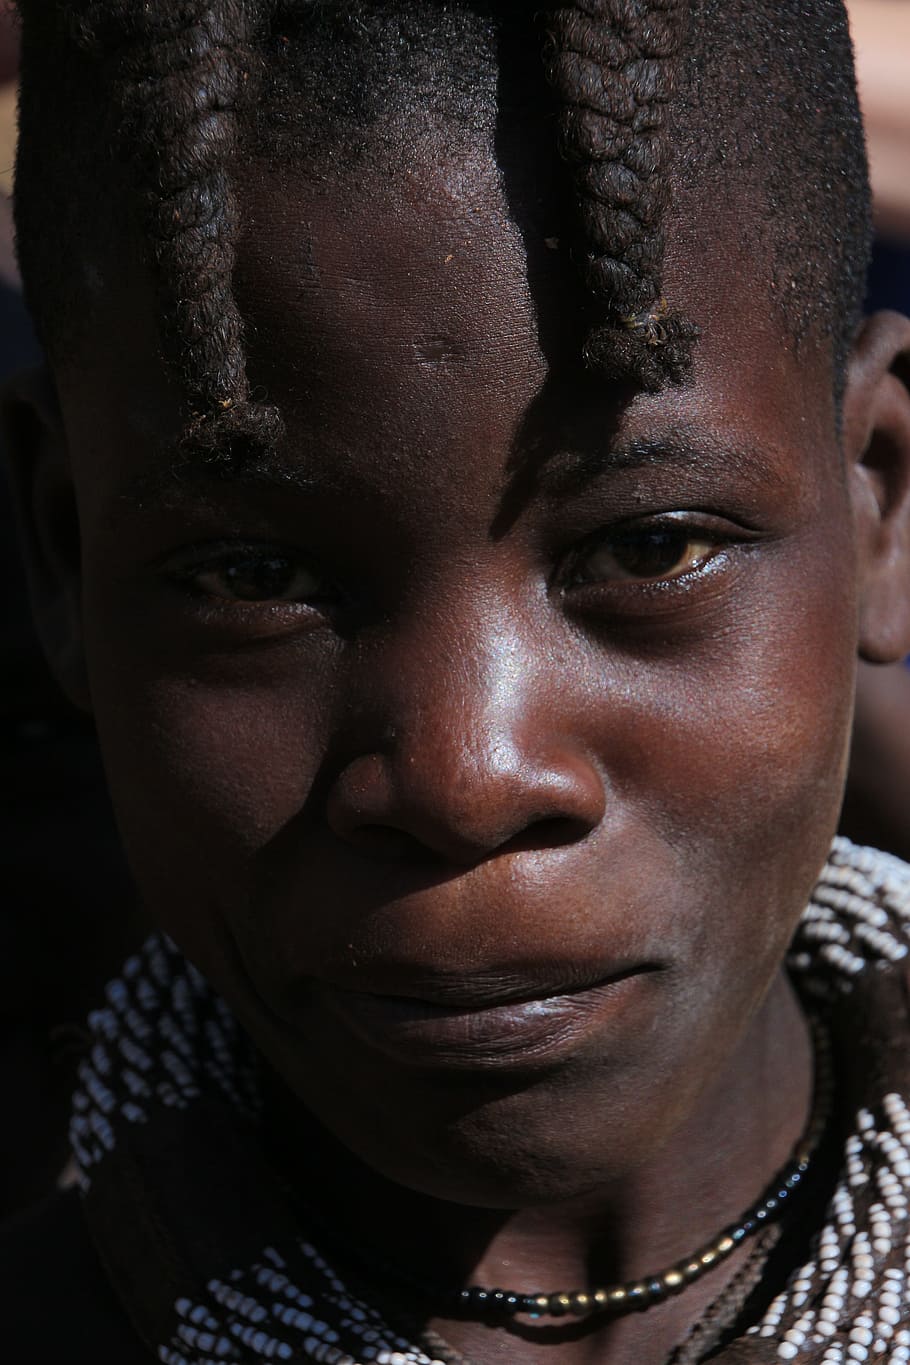 fotografía de primer plano, humano, cara, Namibia, Himba, África, indígena, Frai, negro, África subsahariana